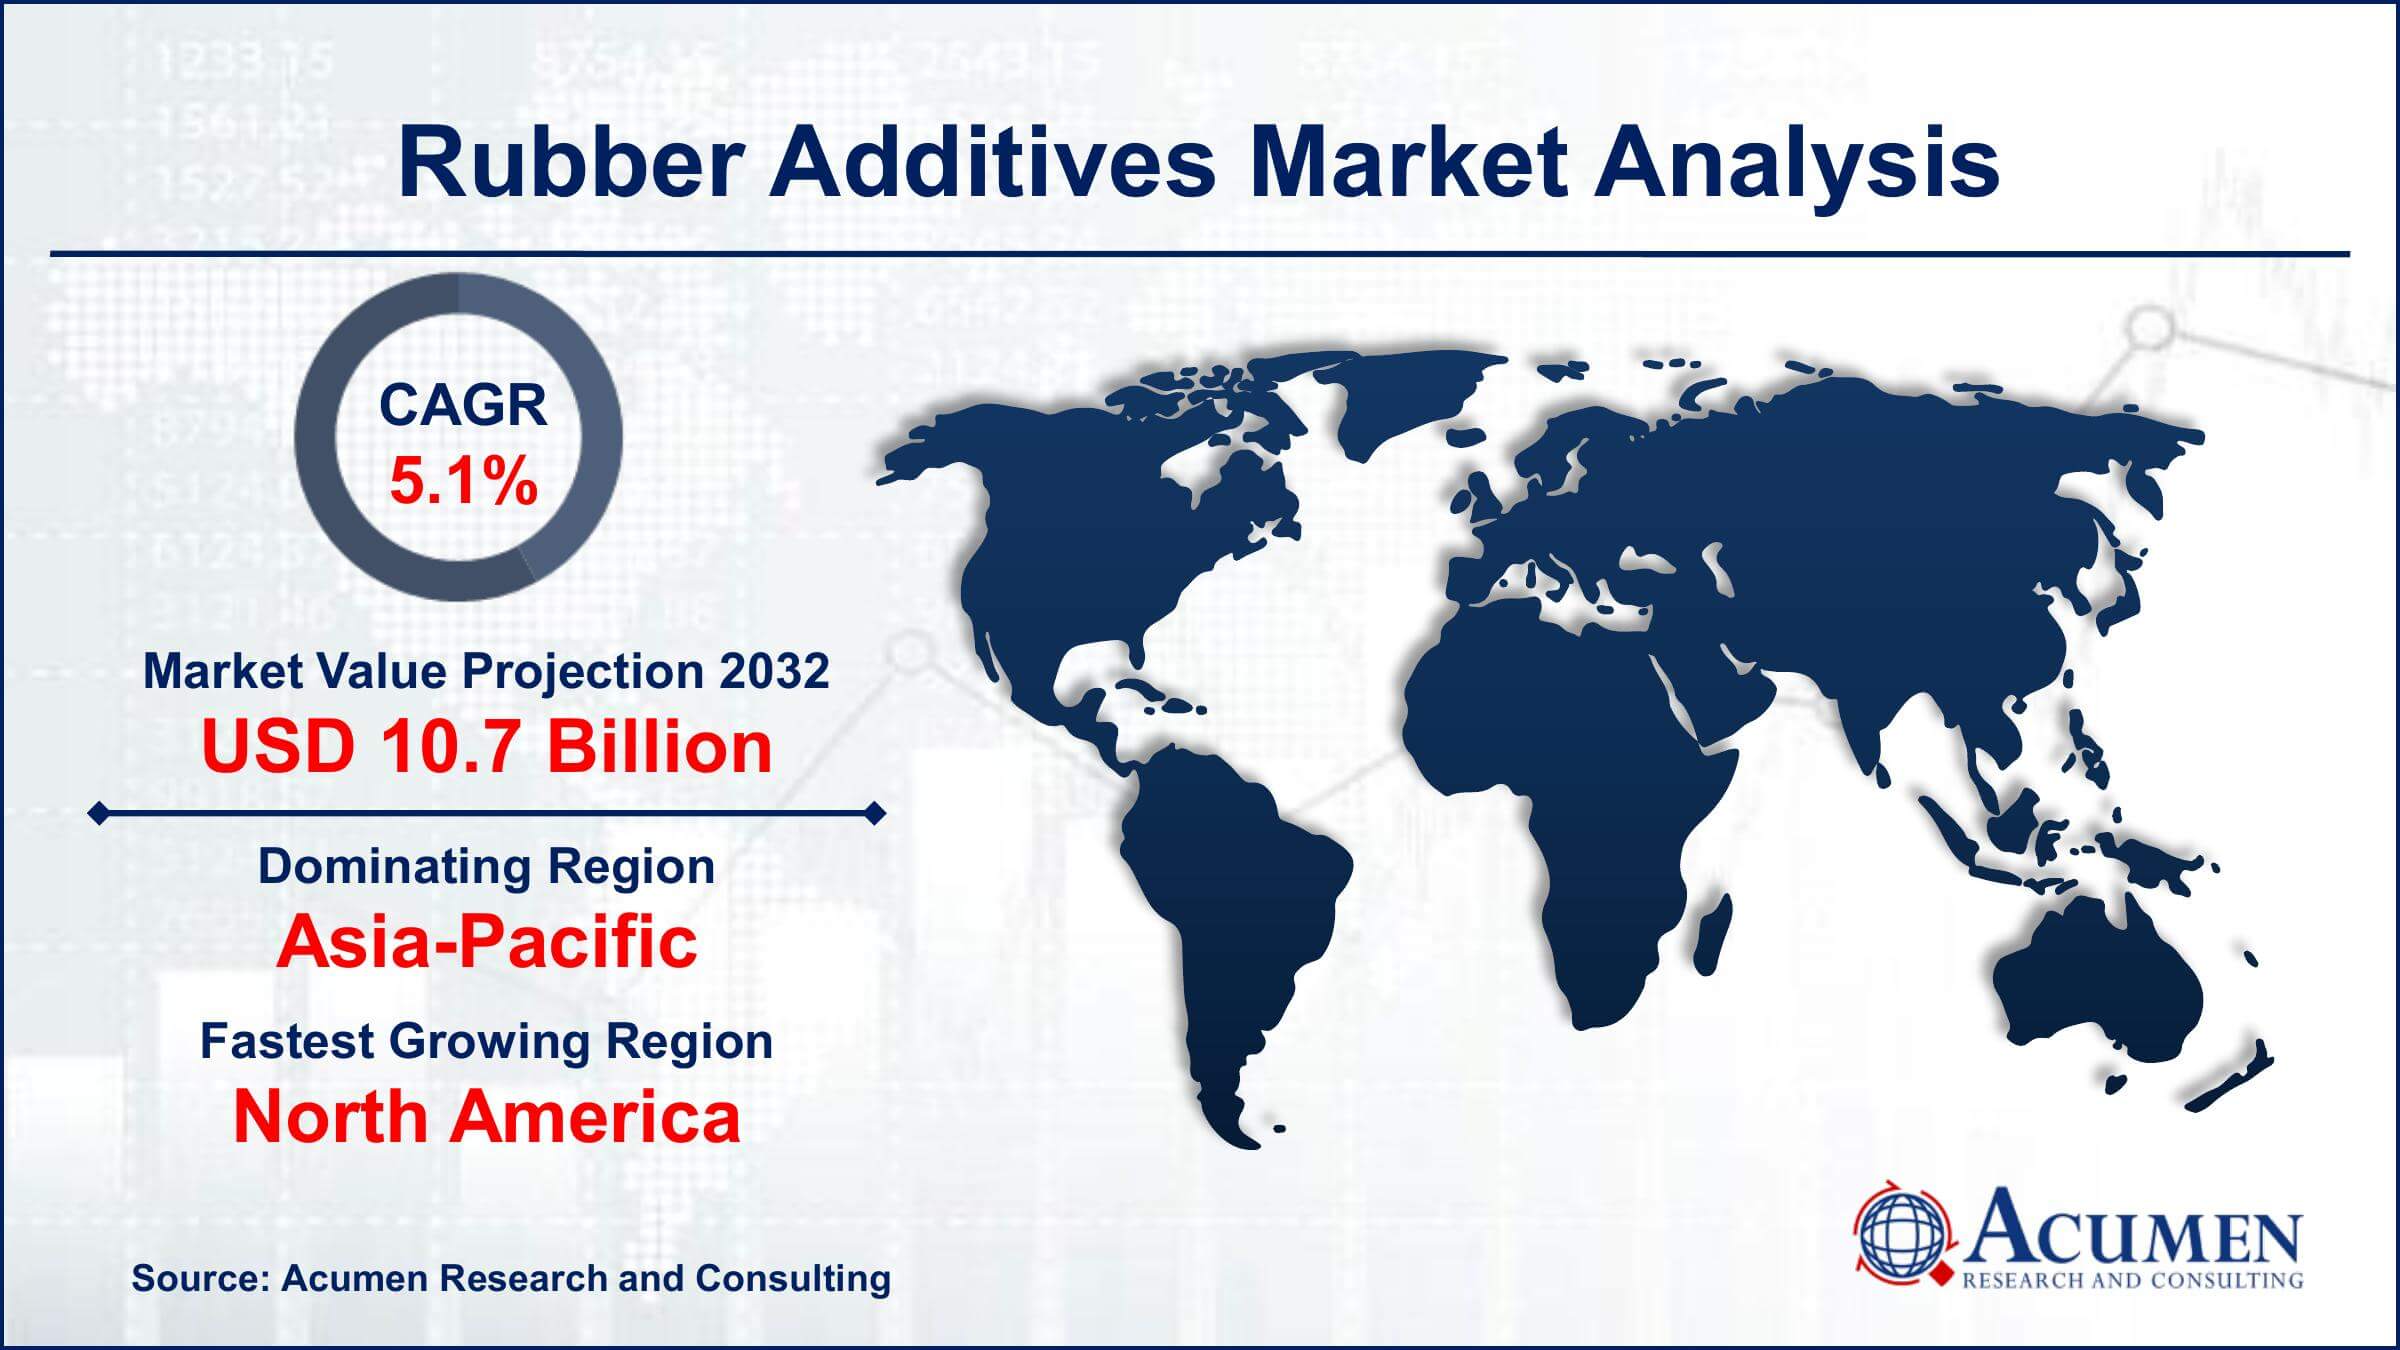 Global Rubber Additives Market Trends